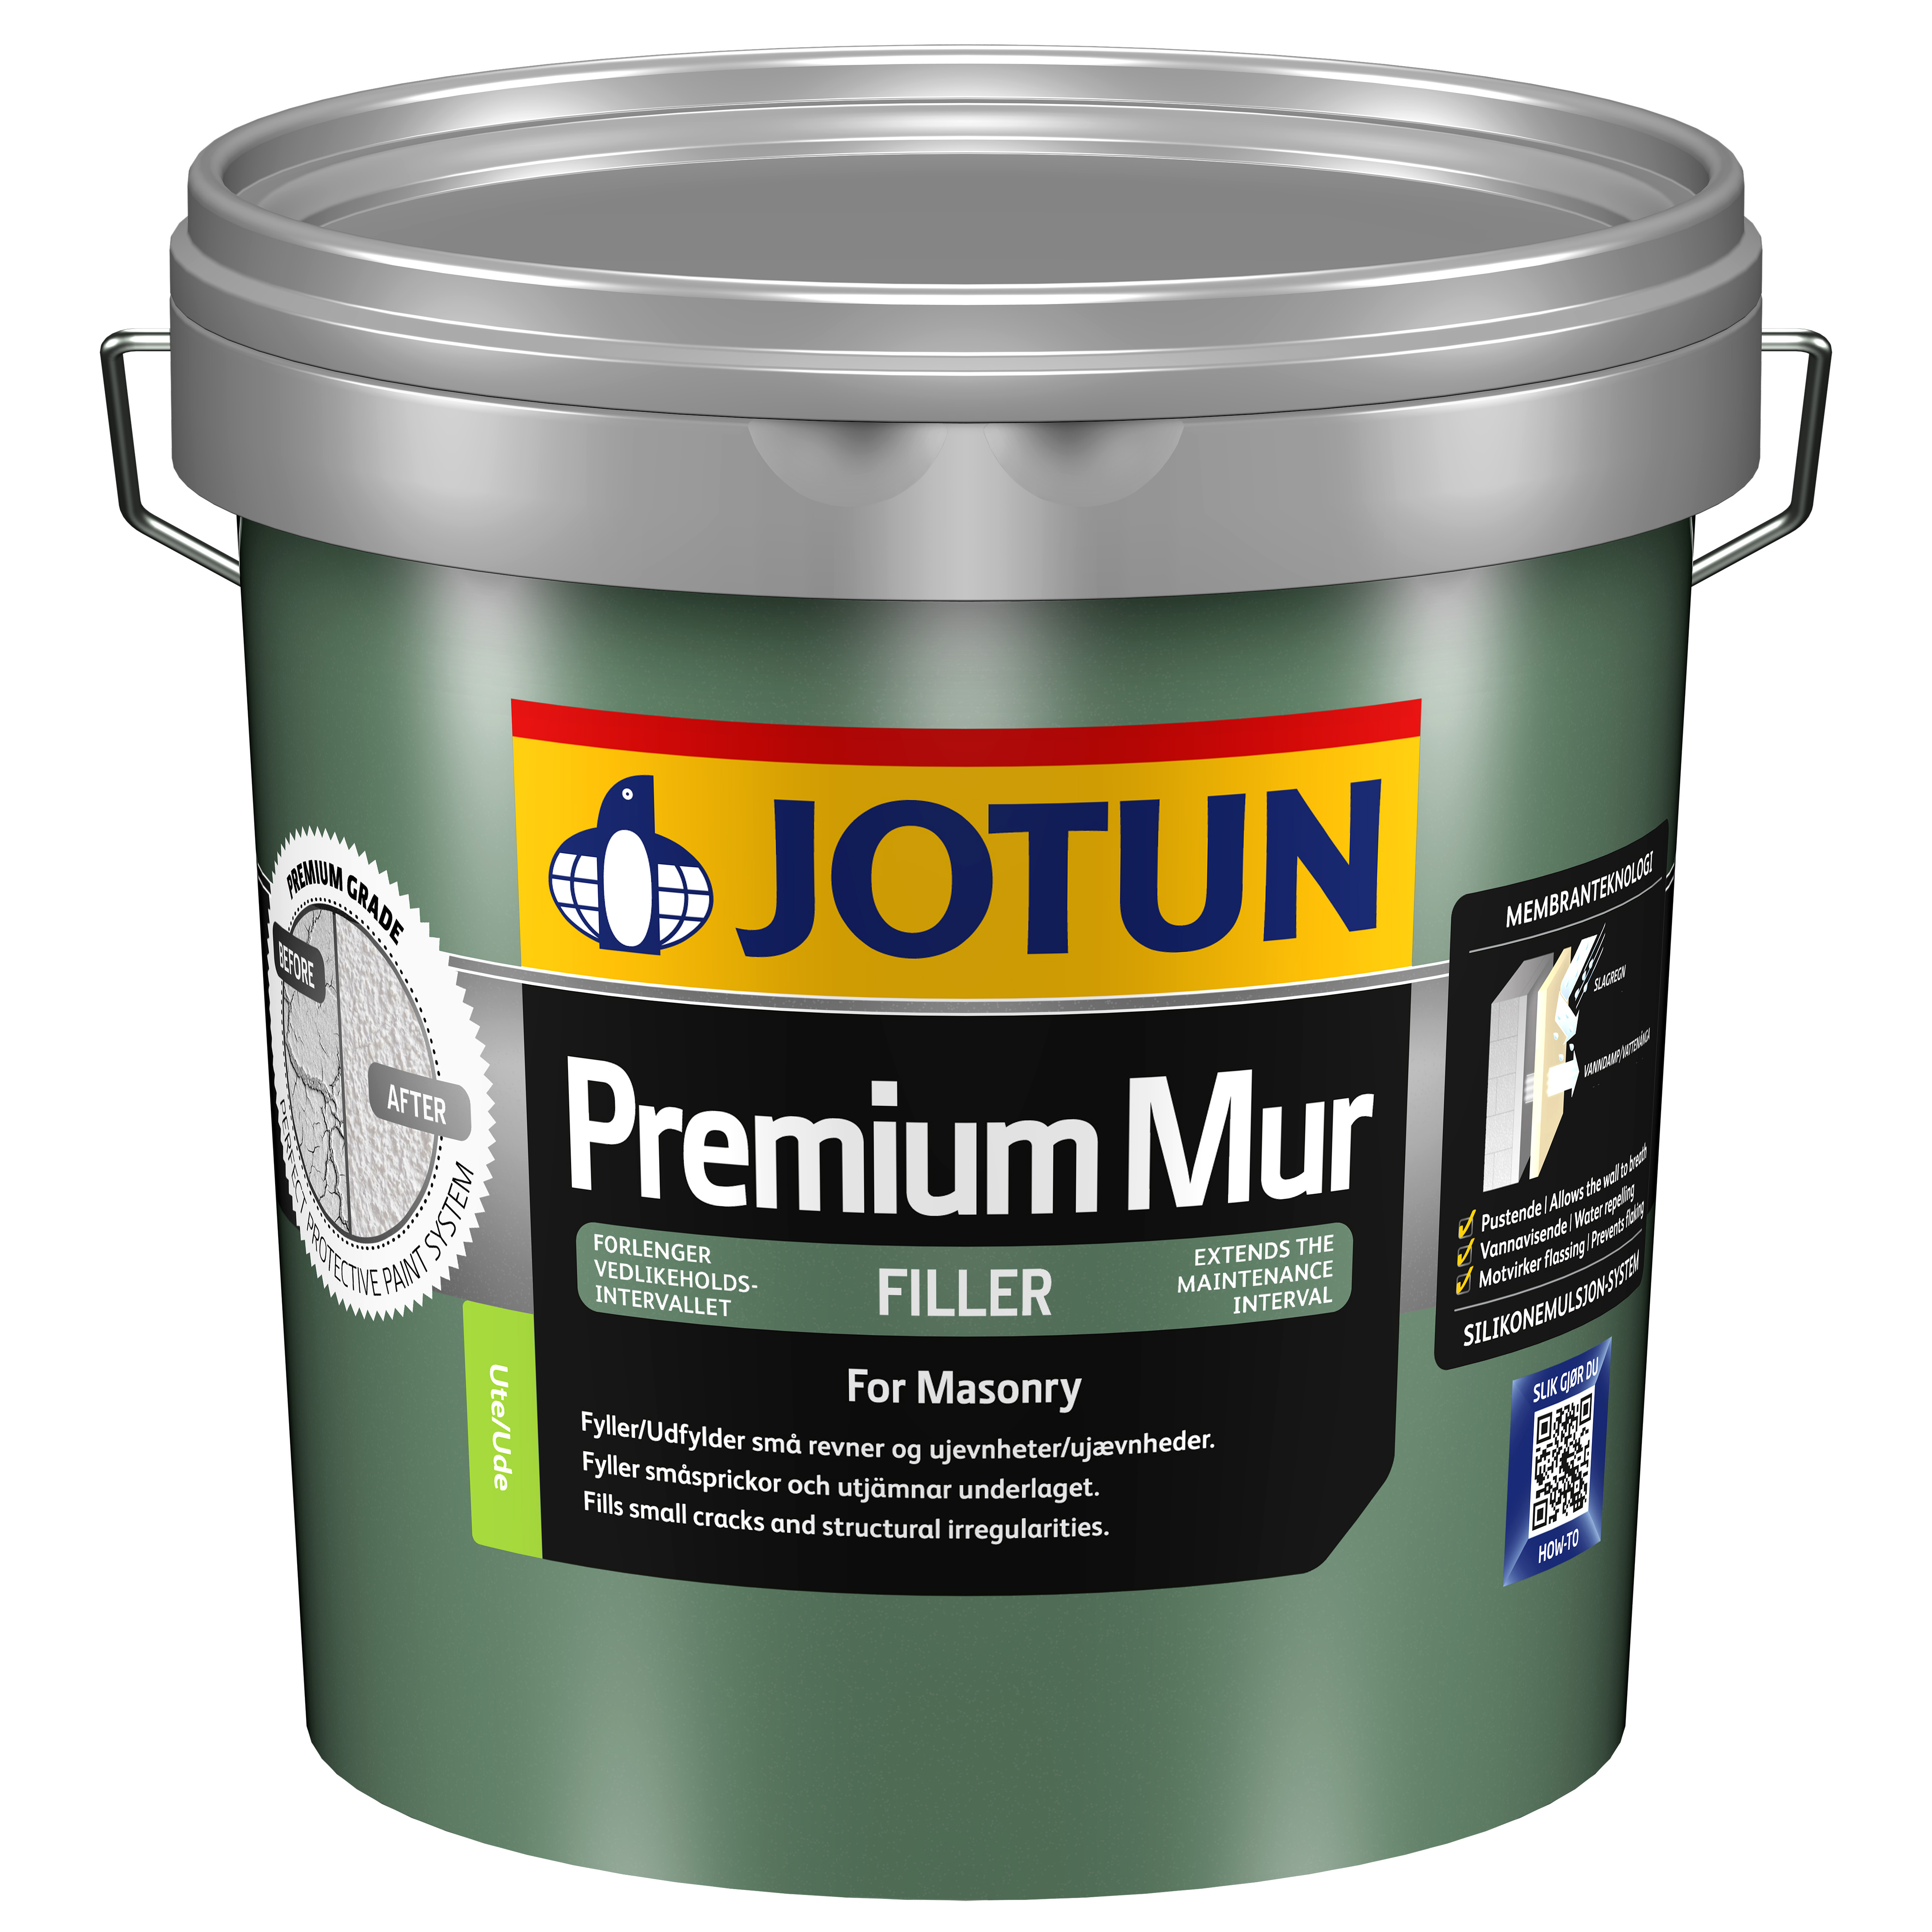 Jotun Premium Mur filler